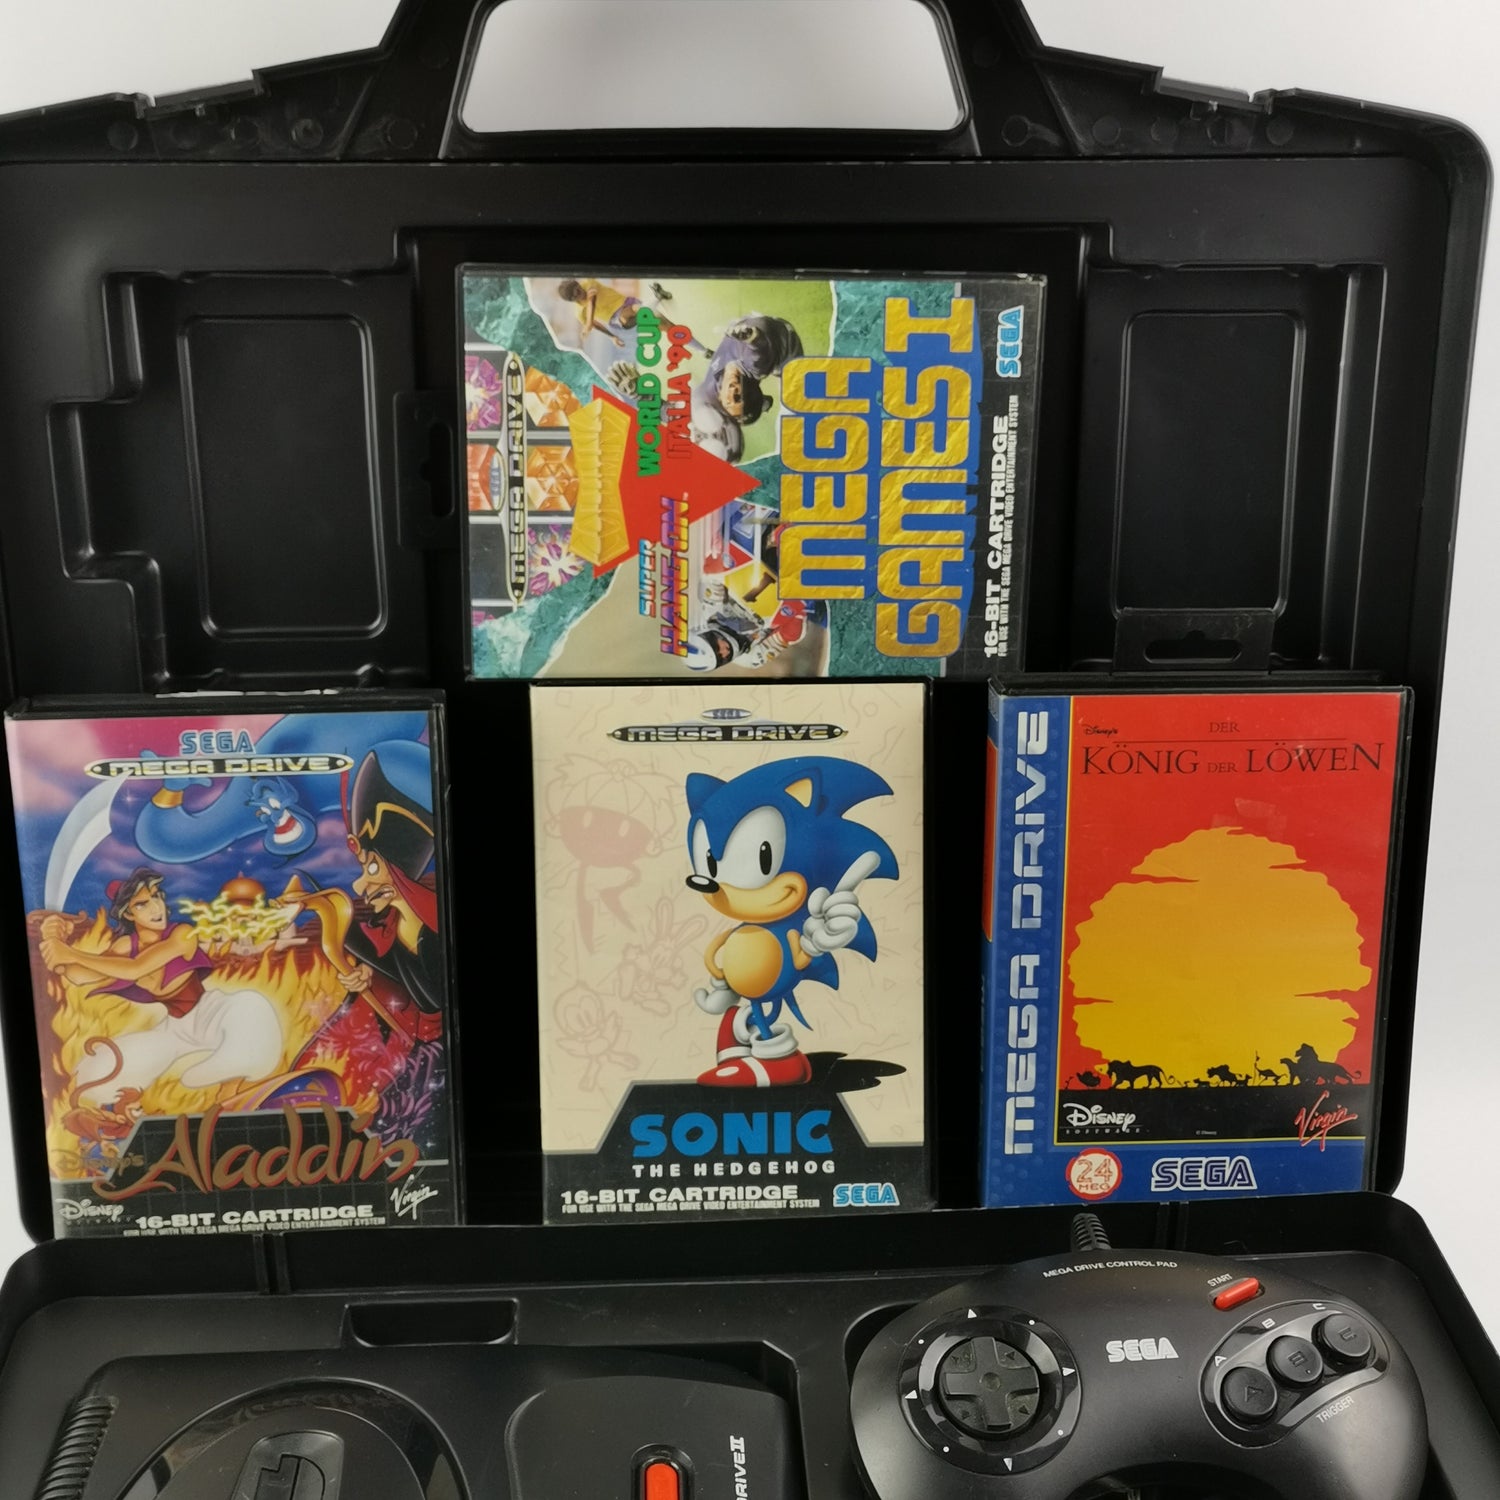 Sega Mega Drive II 2 mit 2 Controller , Strom Kabel, 4 Spiele und Koffer